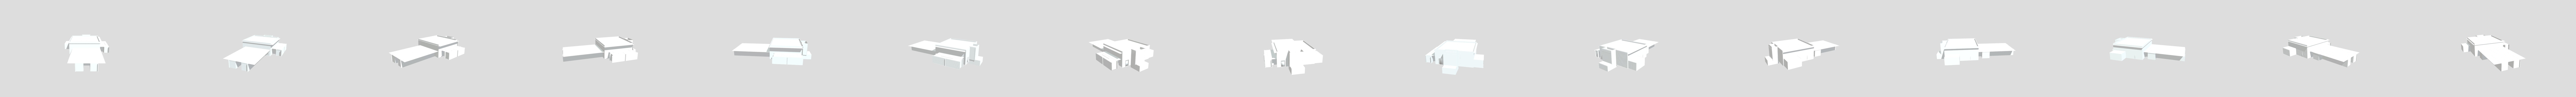 Fnaf-1-map-for-blender - Download Free 3D model by medrmr6458 (@medrmr6458)  [eadd275]